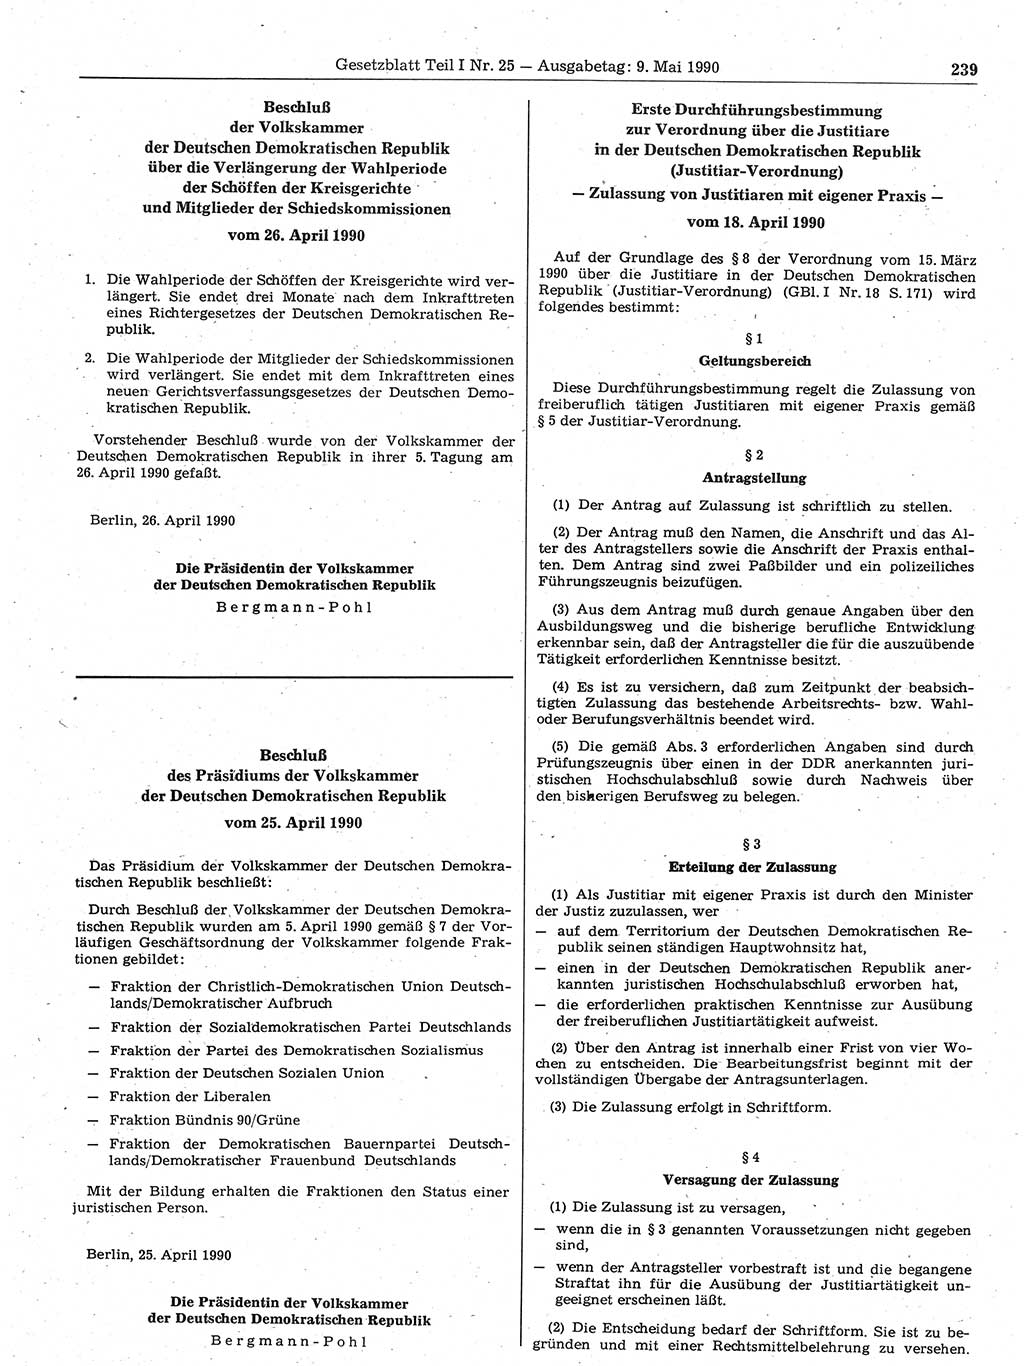 Gesetzblatt (GBl.) der Deutschen Demokratischen Republik (DDR) Teil Ⅰ 1990, Seite 239 (GBl. DDR Ⅰ 1990, S. 239)